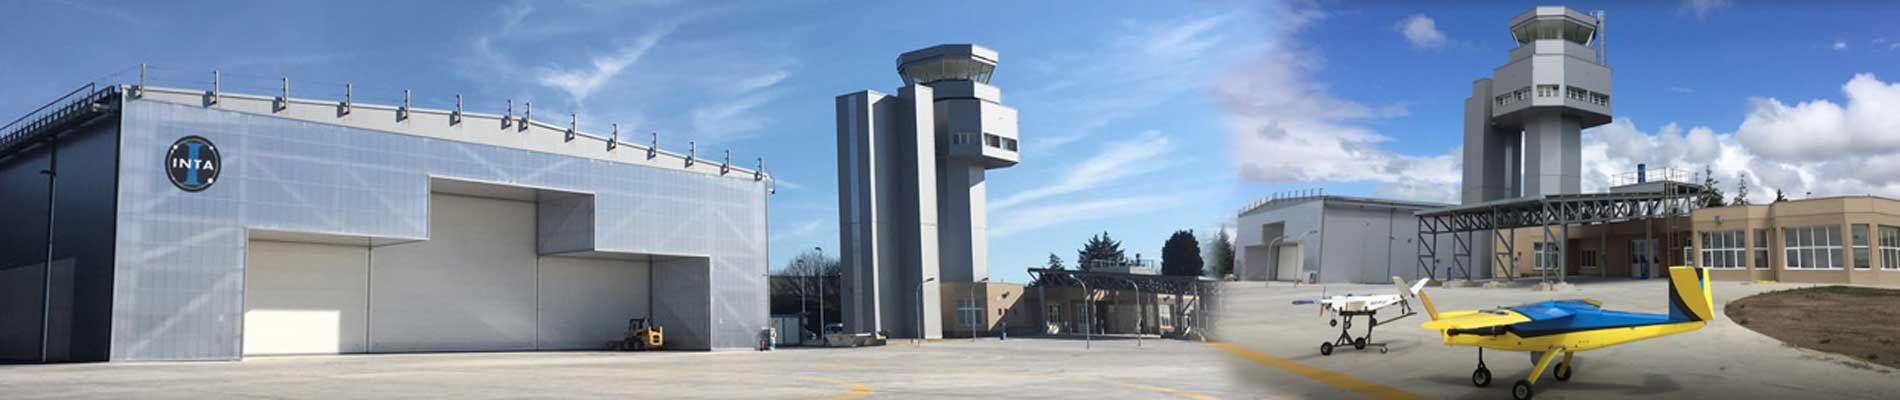 Rozas Airport Research Center (CIAR) in Castro de Rei (Lugo)